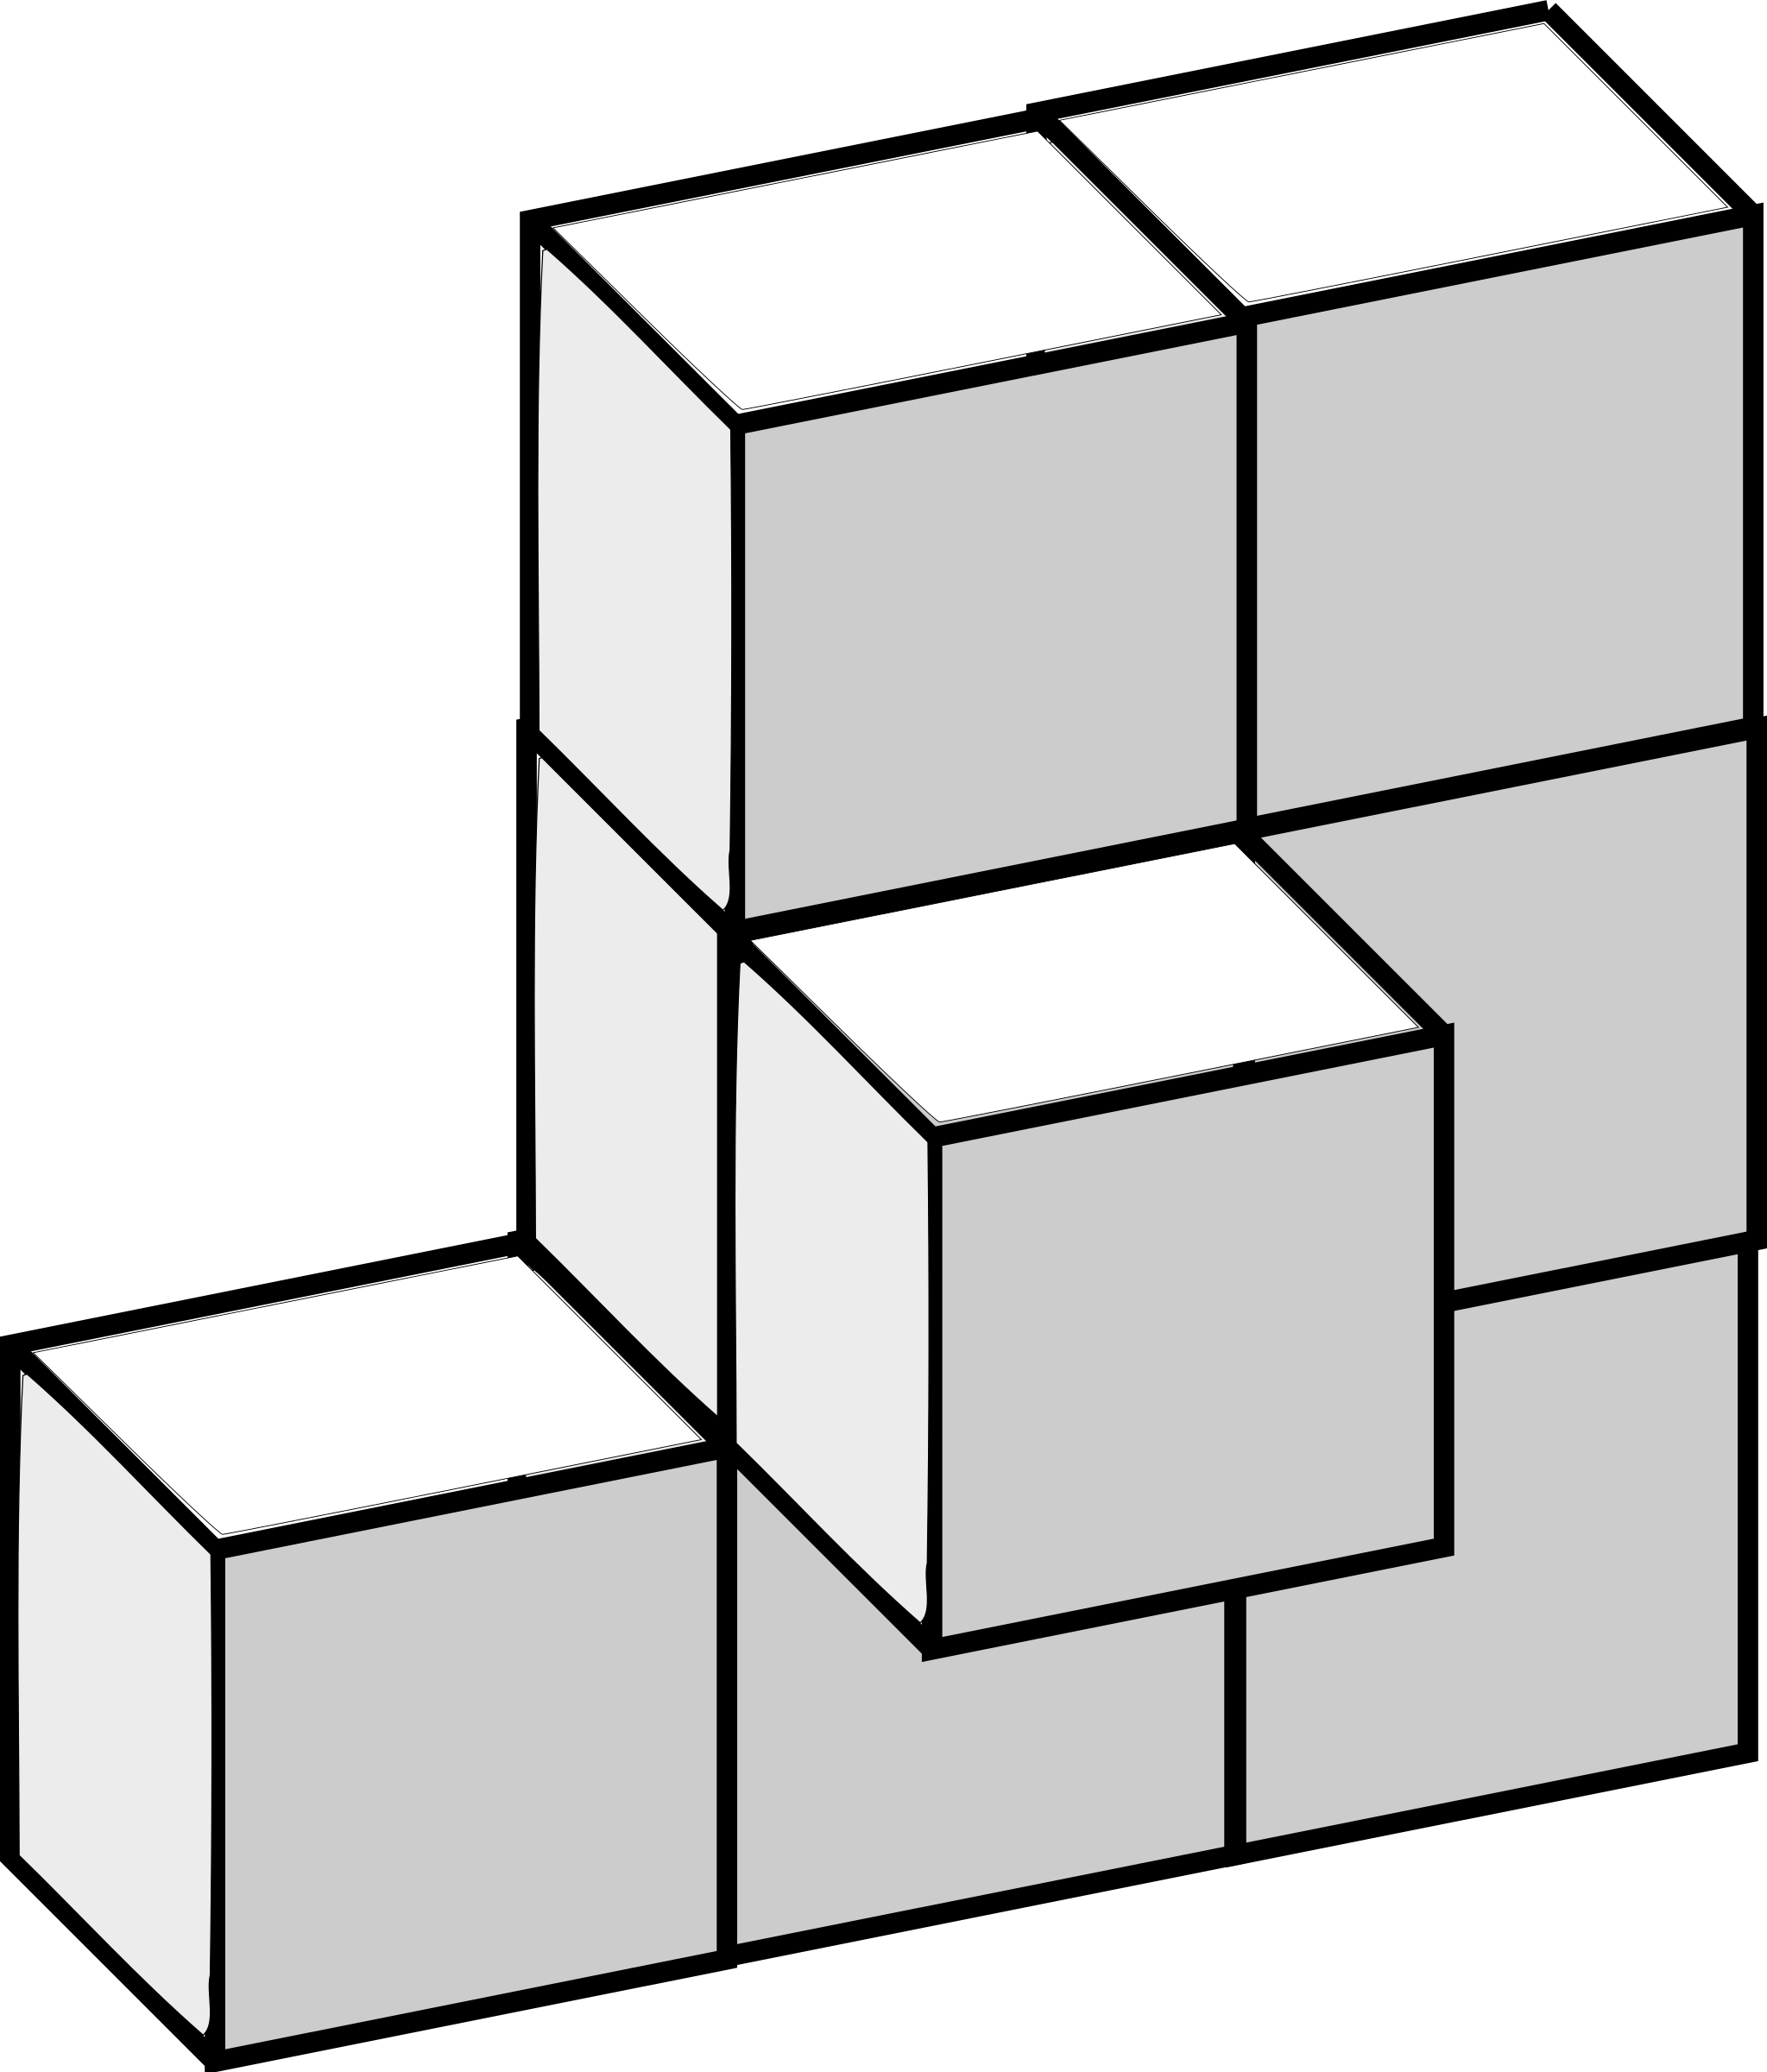 Cube Square Shape Line Art Symmetry - Soma 3d Puzzles (2047x2400)